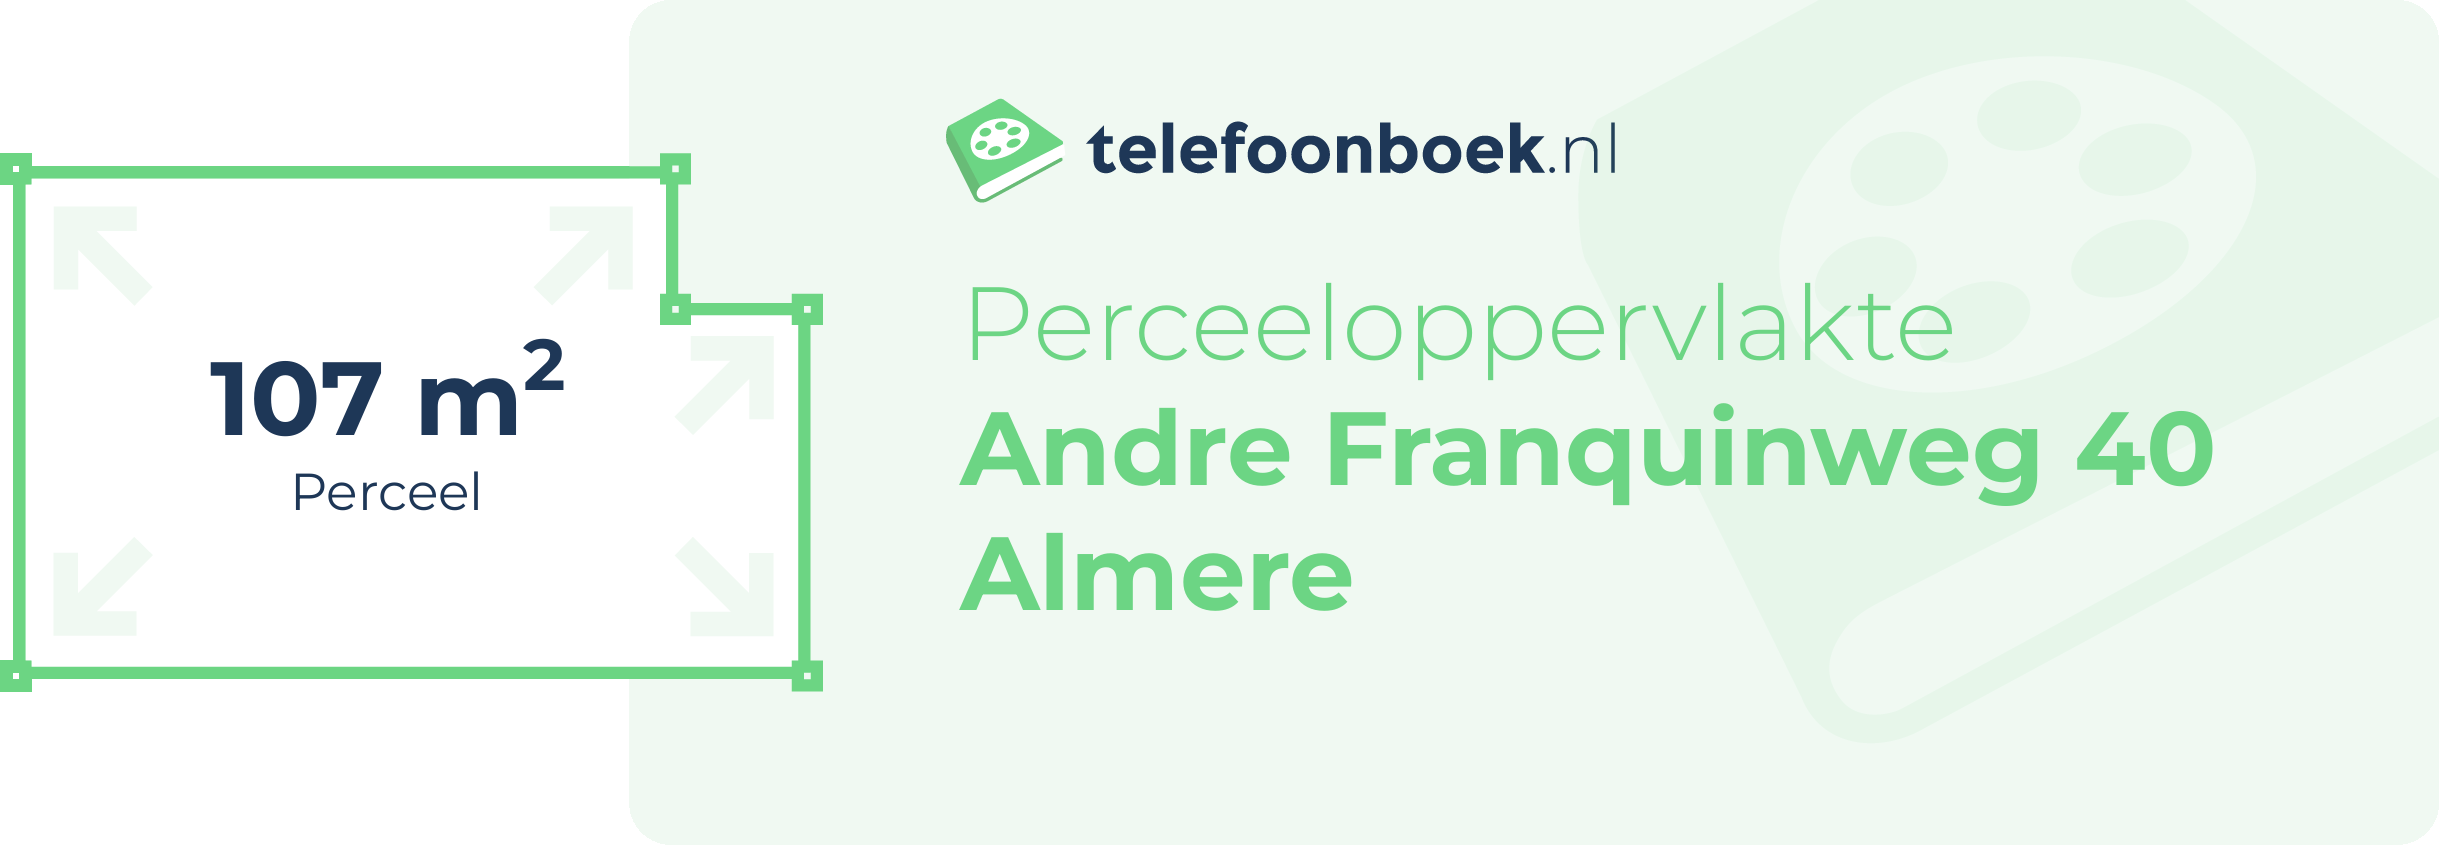 Perceeloppervlakte Andre Franquinweg 40 Almere